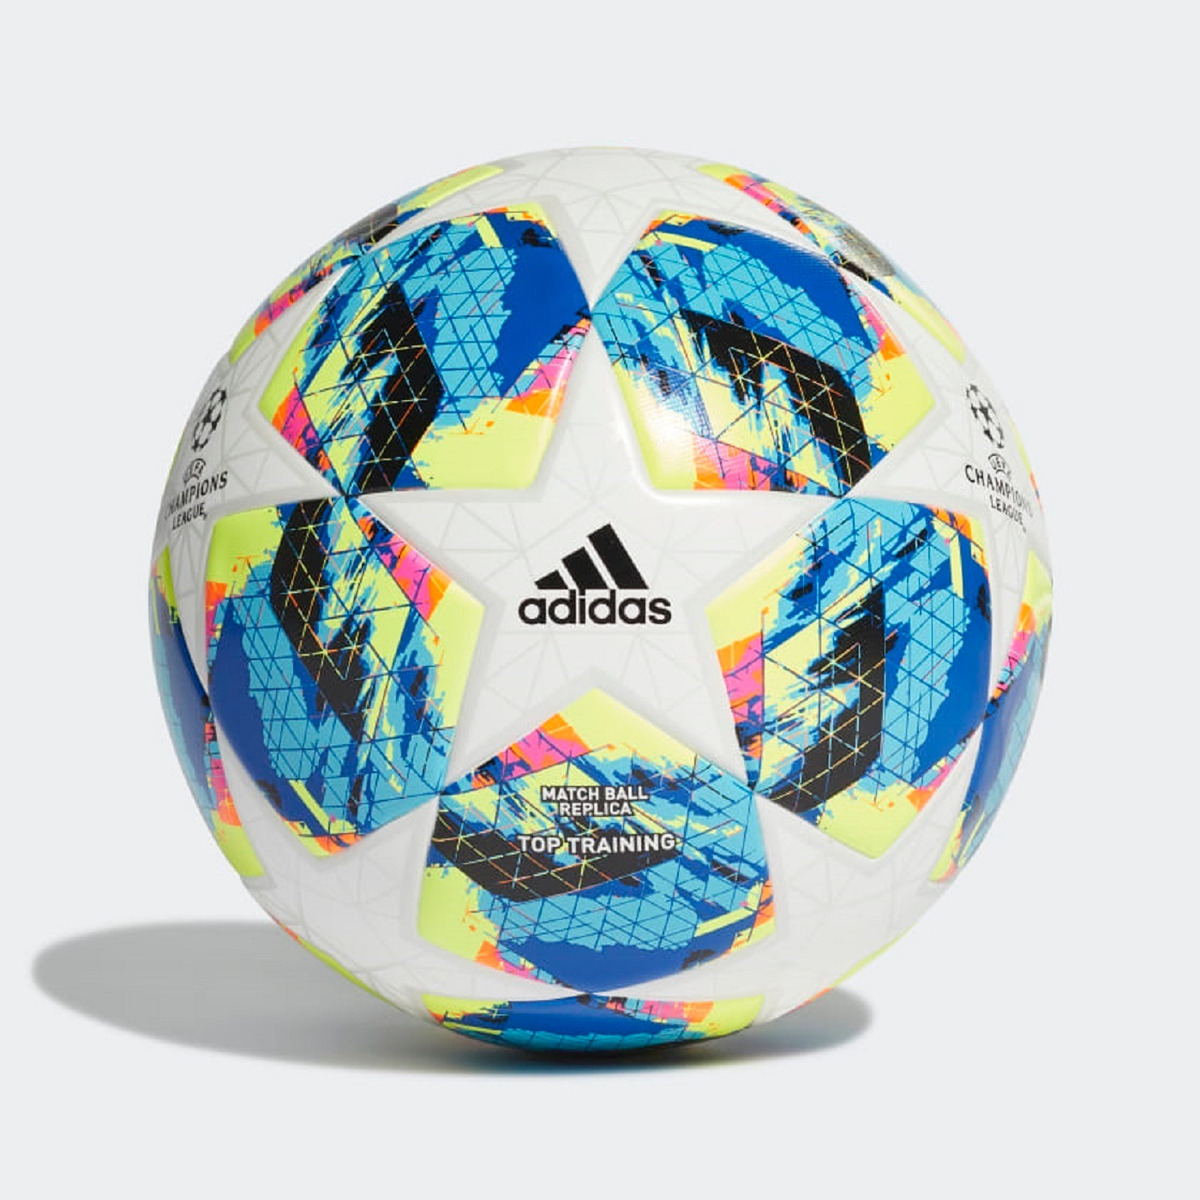 Clasificación mezcla Brote طفيف فك تشفير صدمه خفيفه balones de futbol adidas 2019 - onburningpages.com